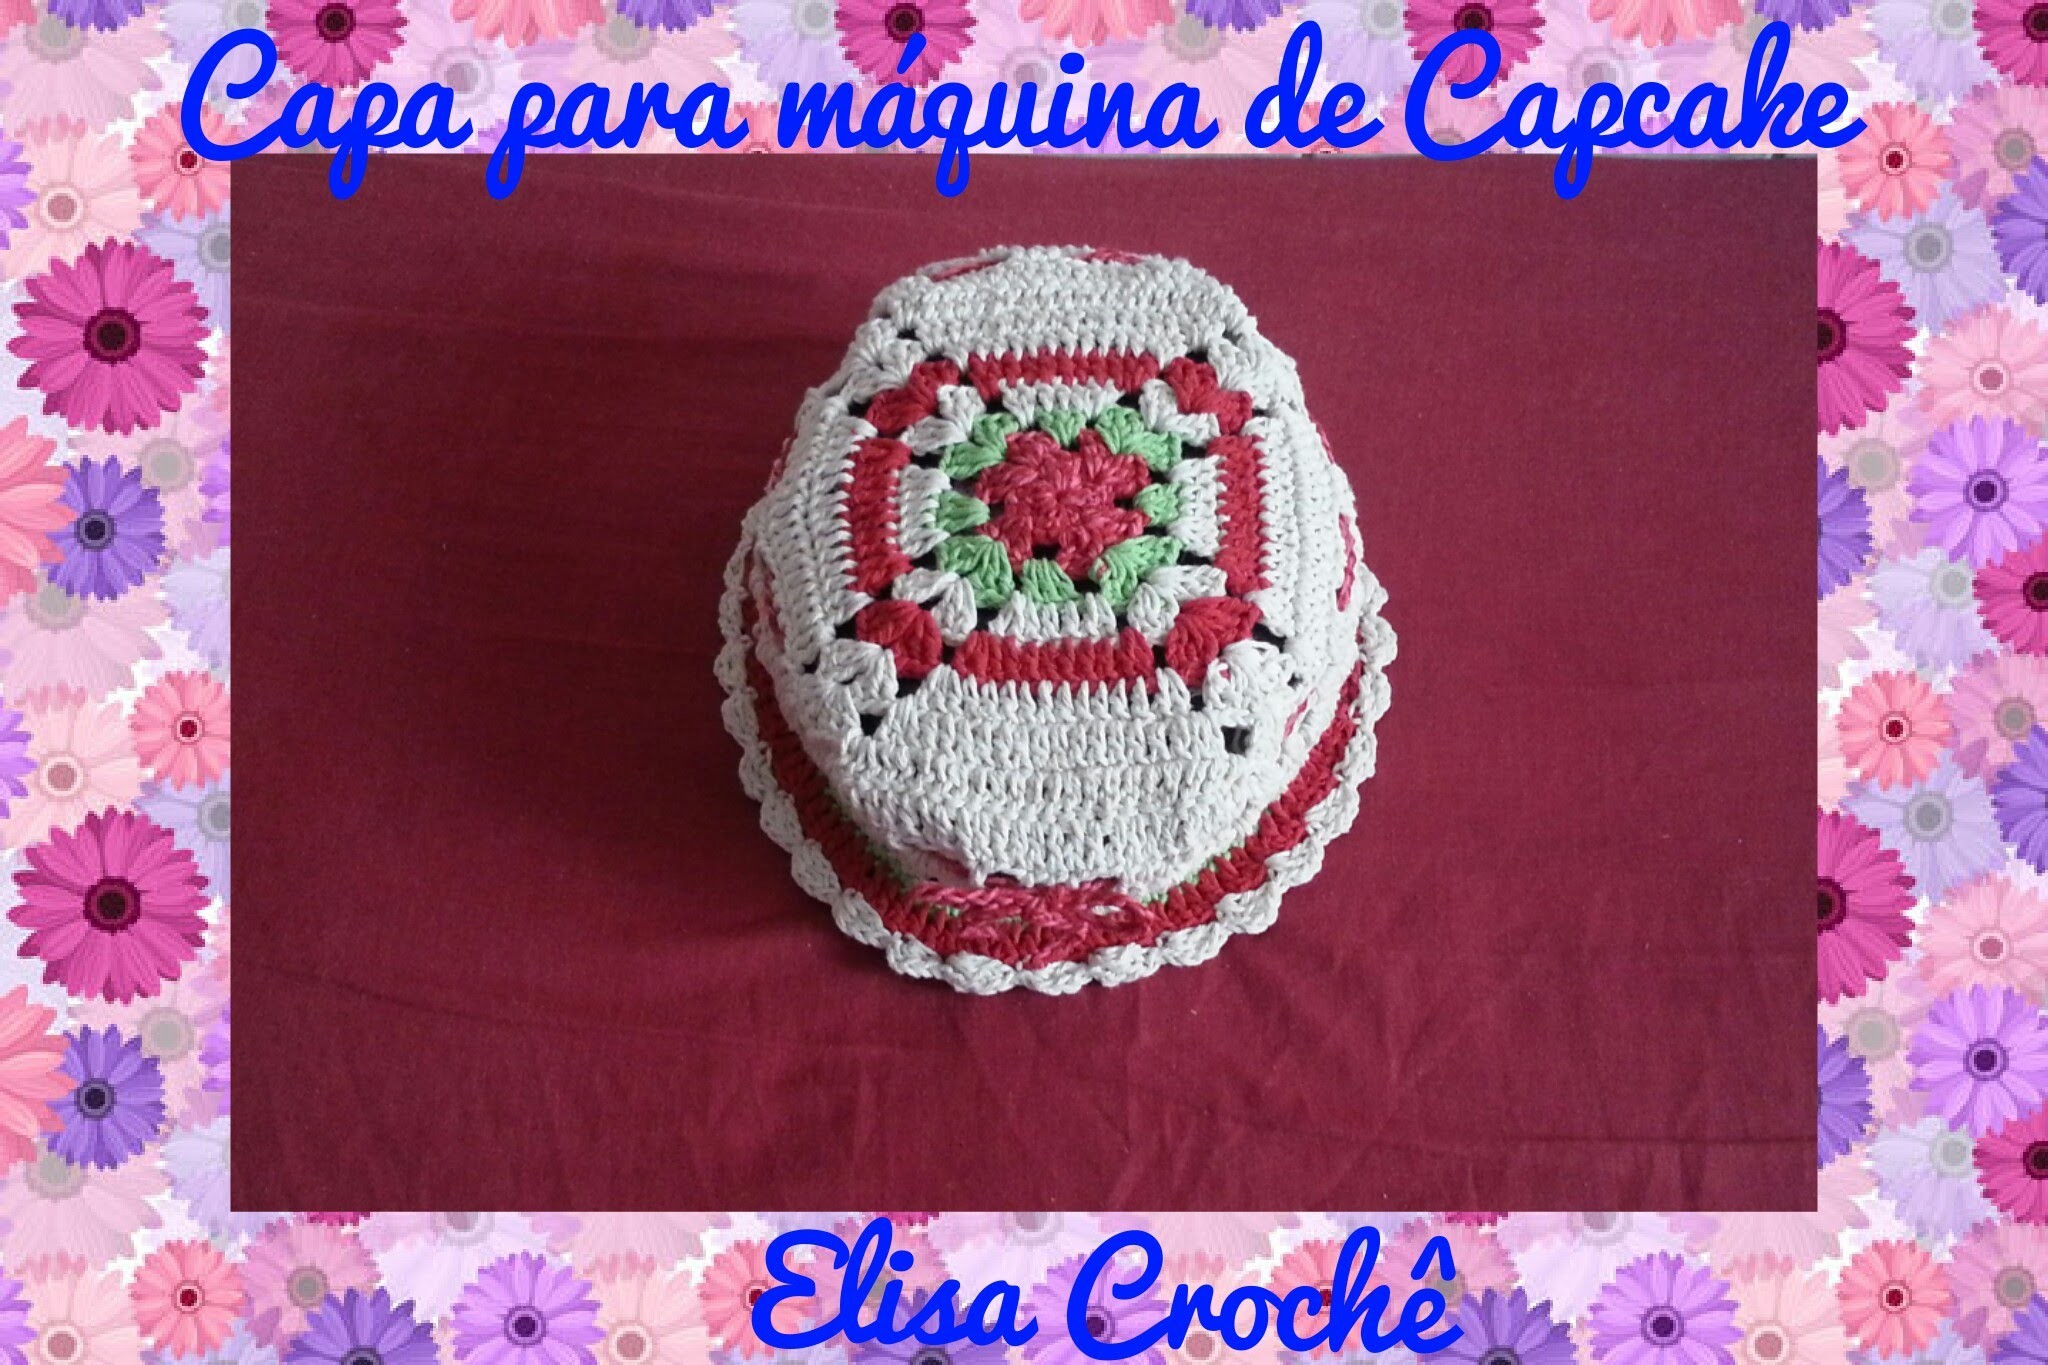 Capa para máquina de Capcake em crochê # Elisa Crochê